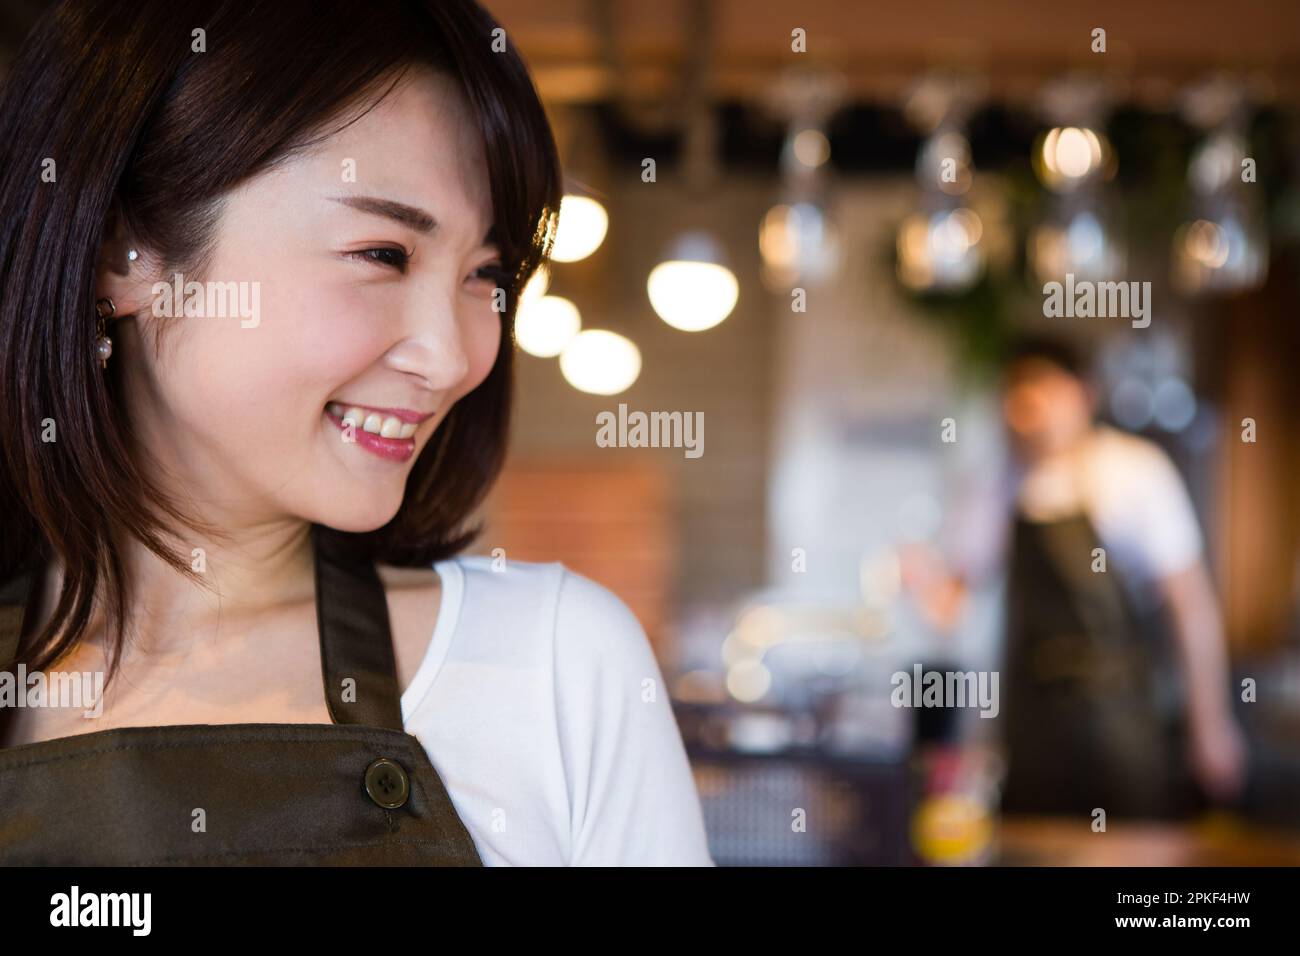 Cafe waitresses Stock Photo